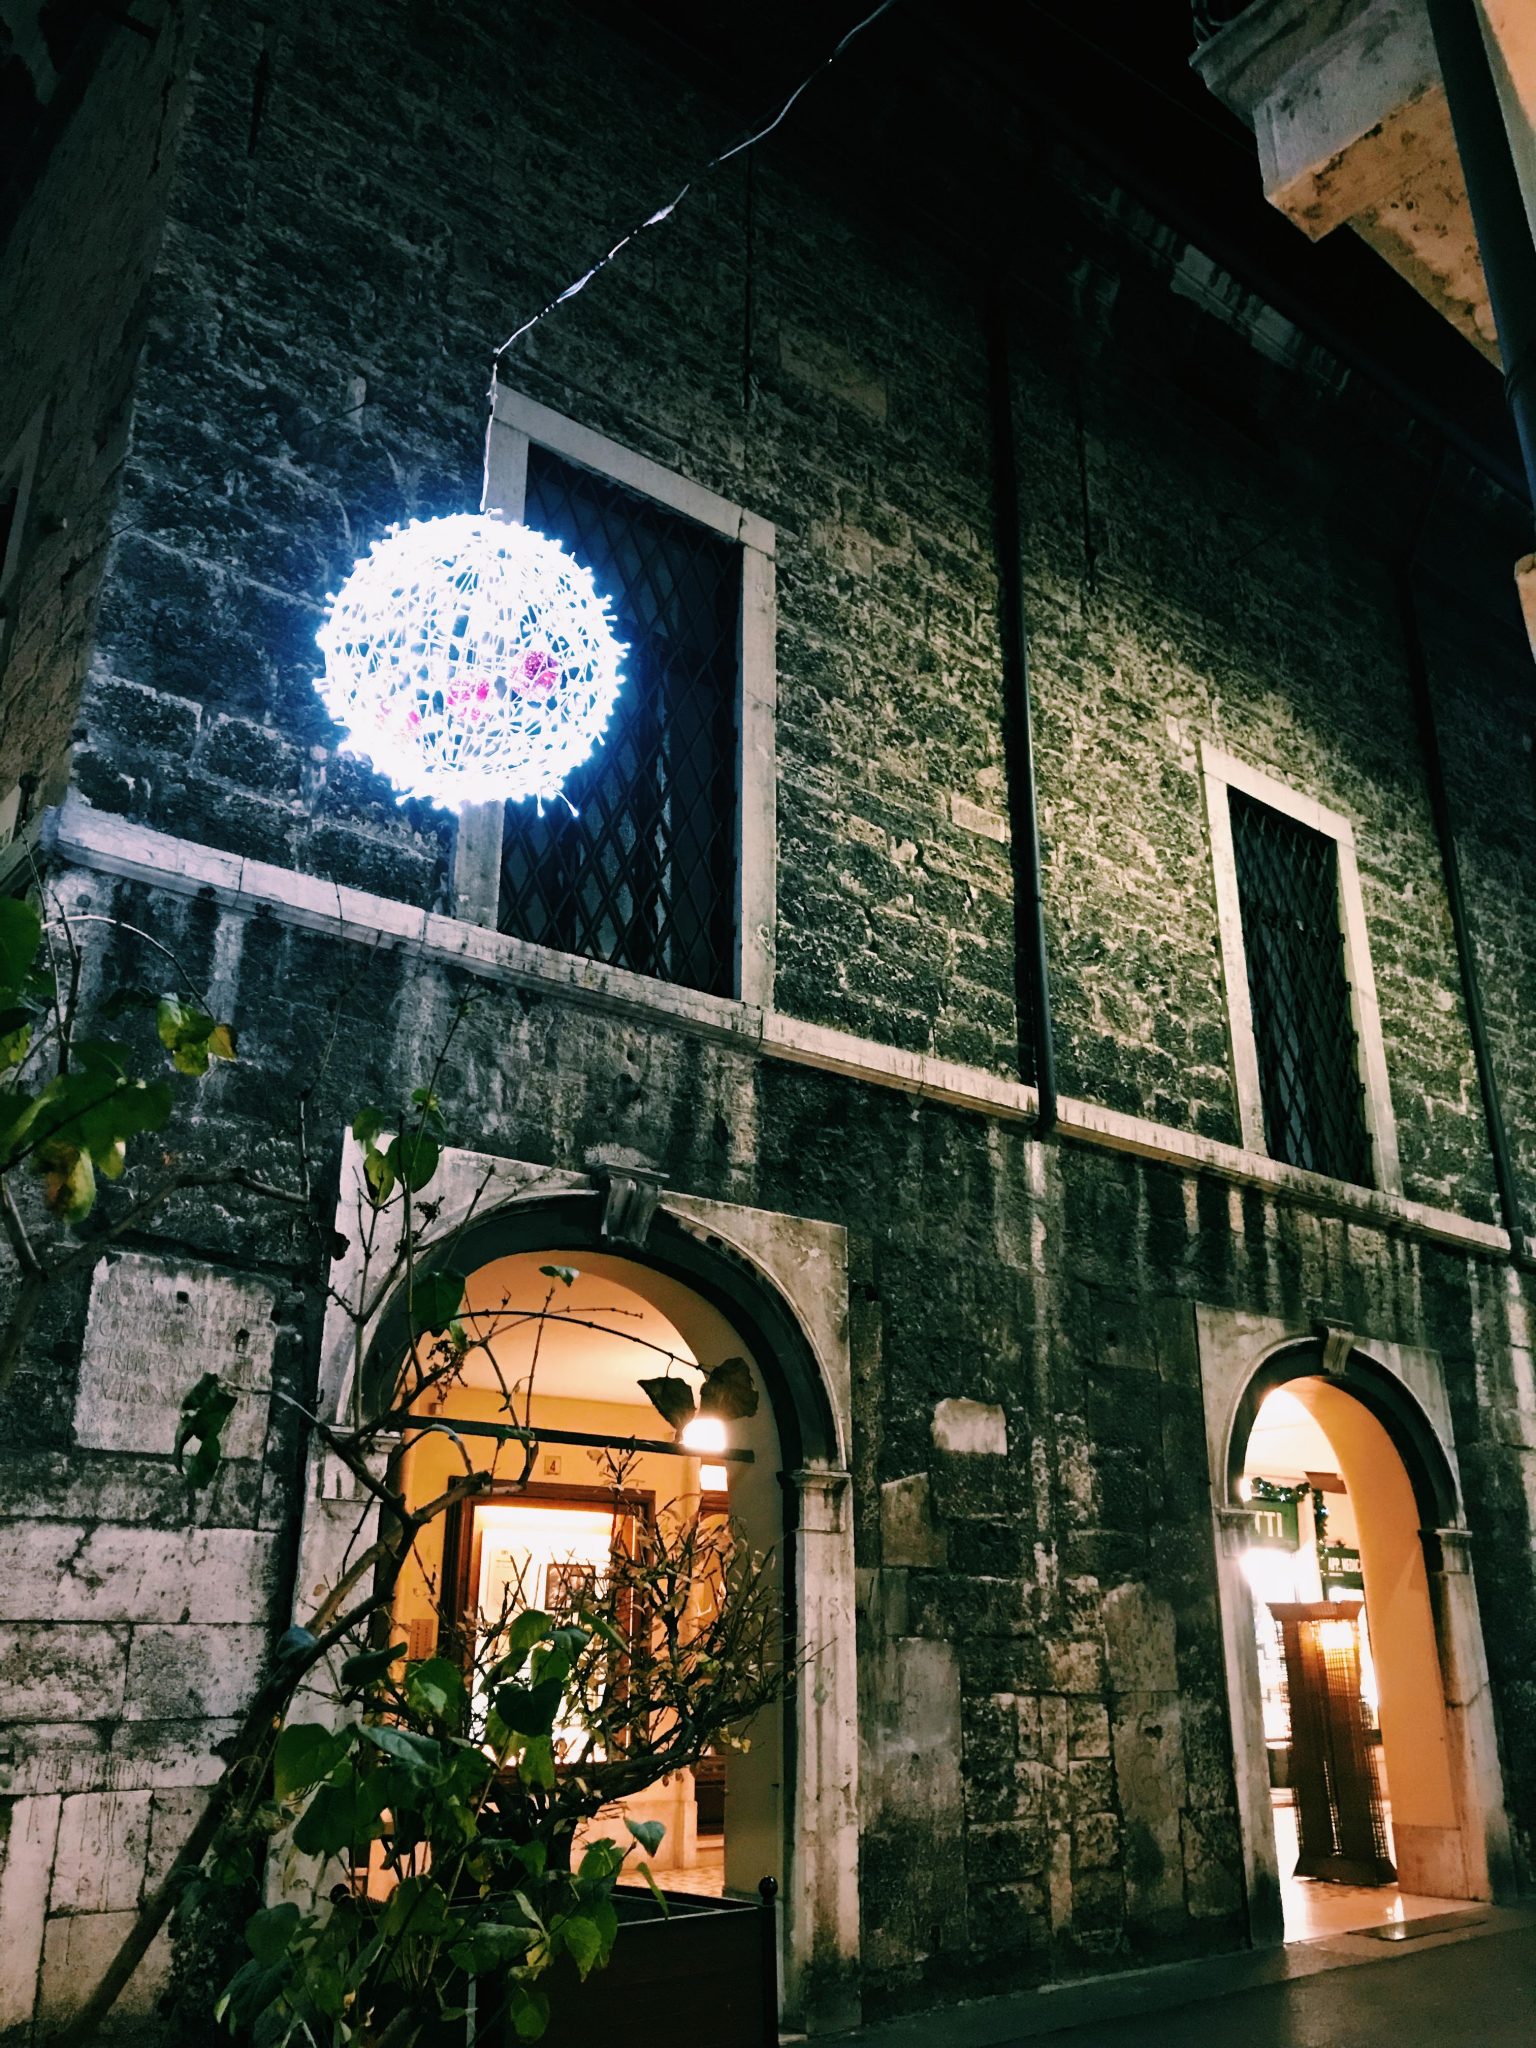 Una passeggiata serale fra le mille luci di Brescia, quando i colori delle feste accendono la città e la trasformano ogni giorno in qualcosa di nuovo